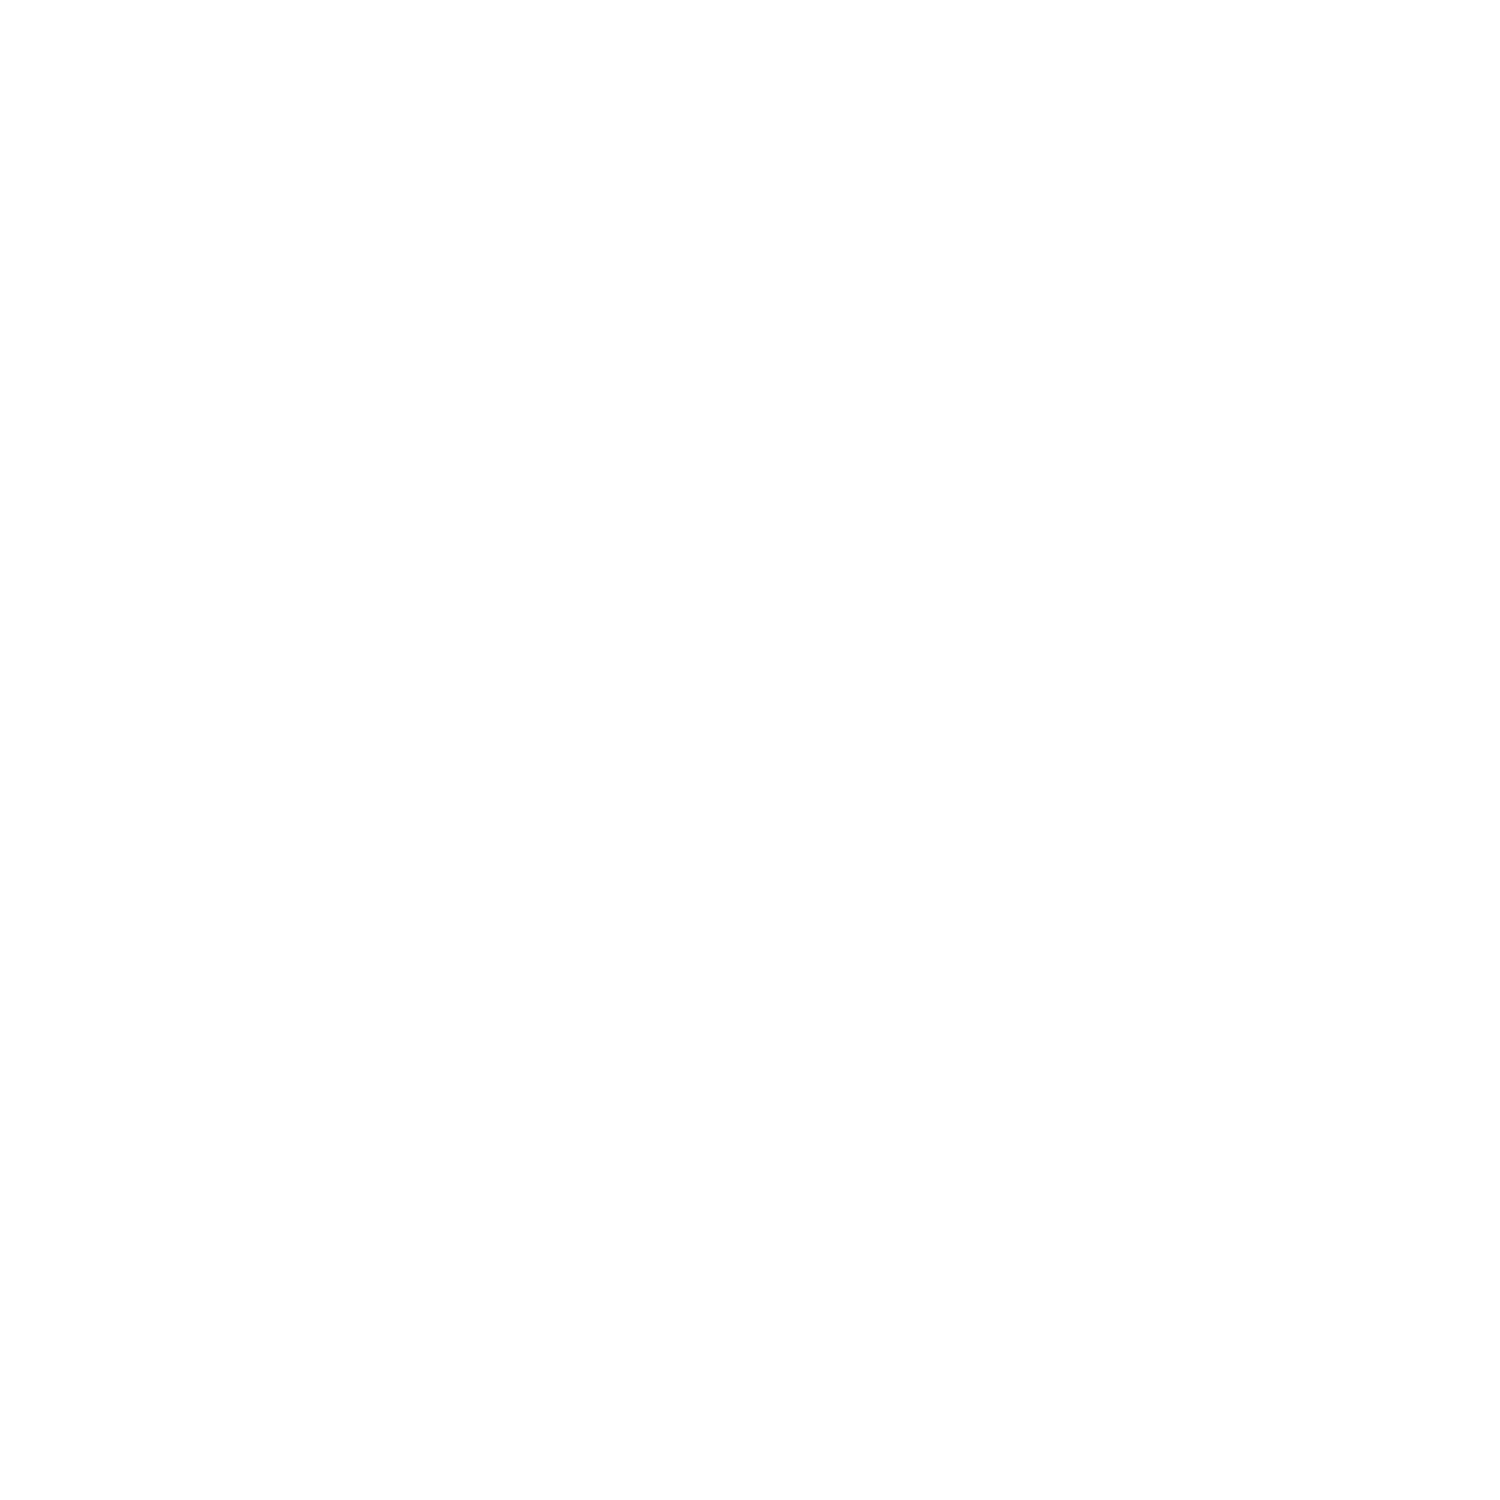 2 waves + the sun